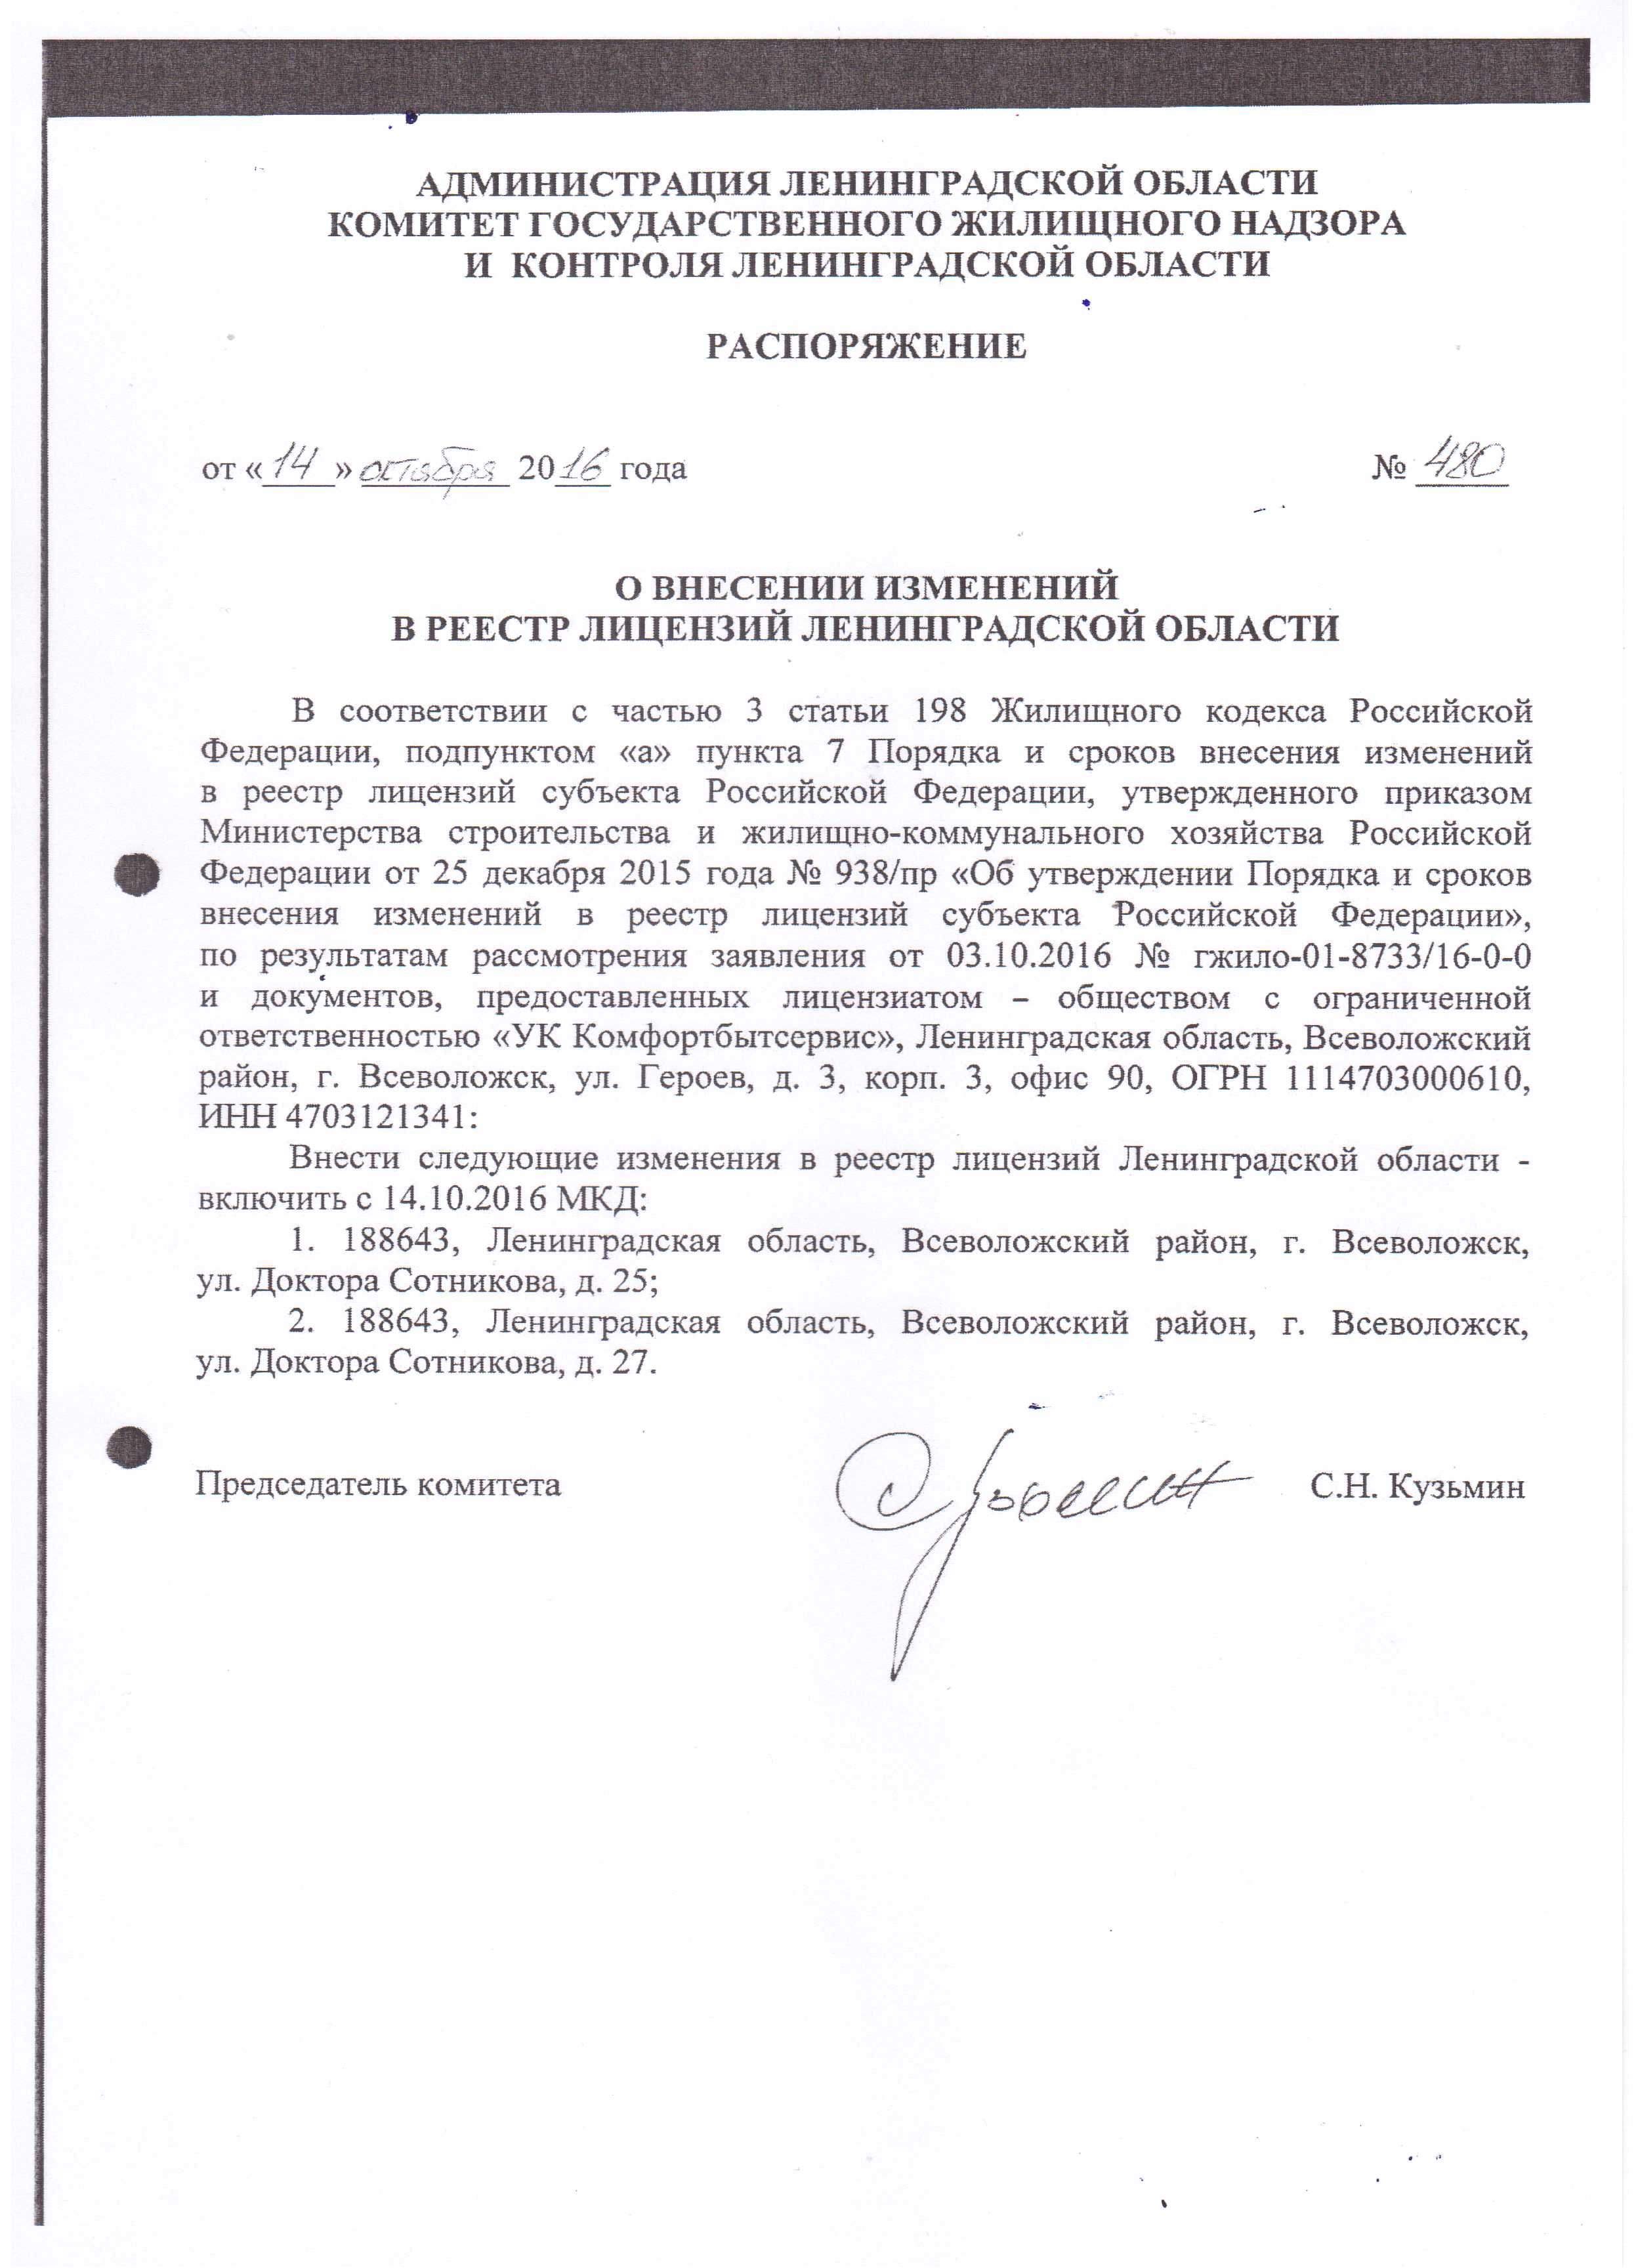 Распоряжение о внесении изменений в реестр лицензий Ленинградской области